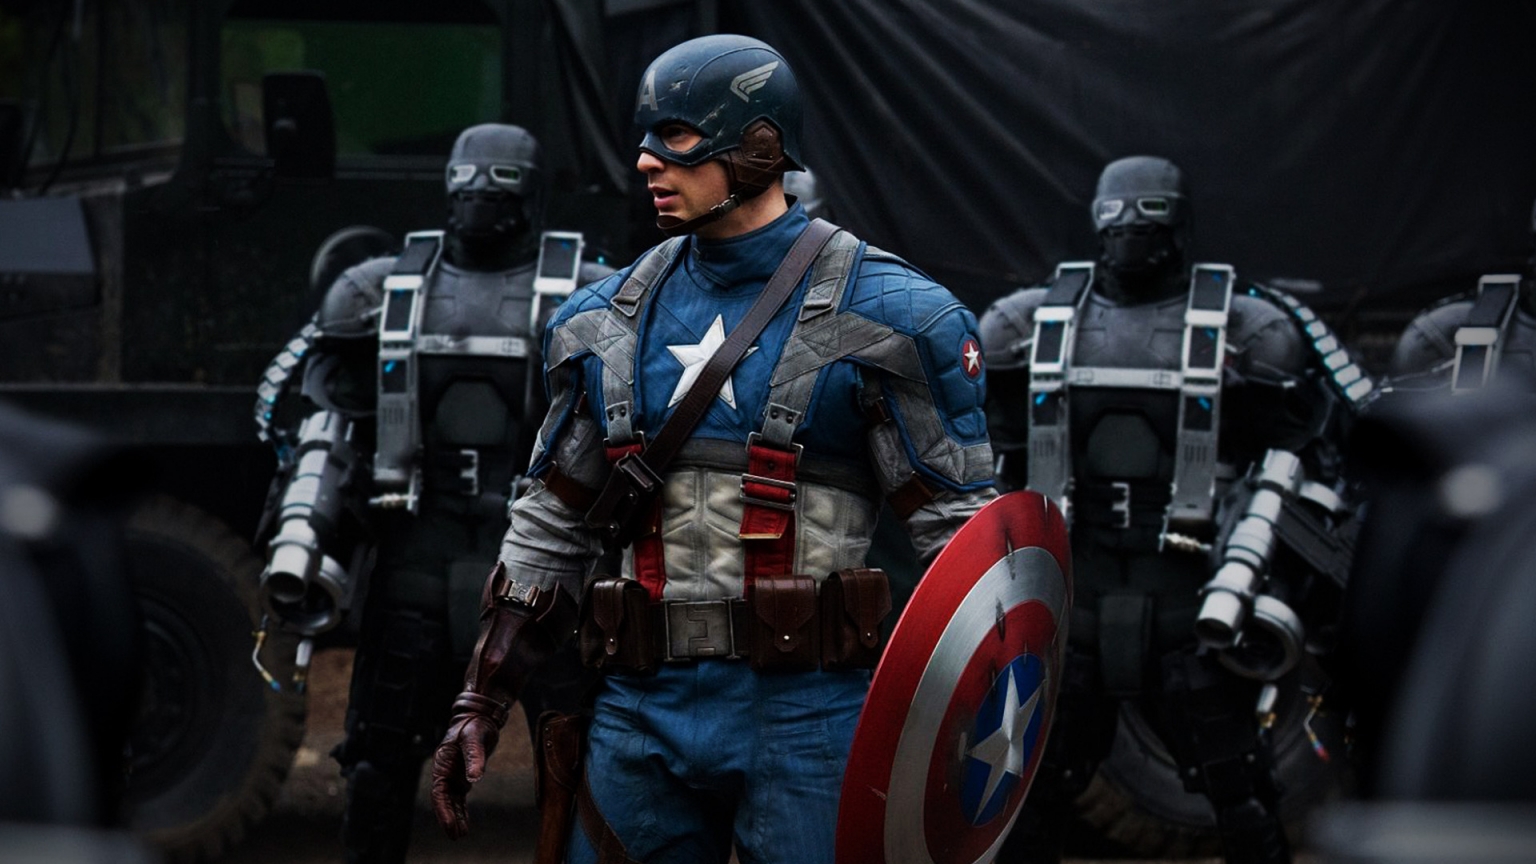 Captain America 2011 for 1536 x 864 HDTV resolution